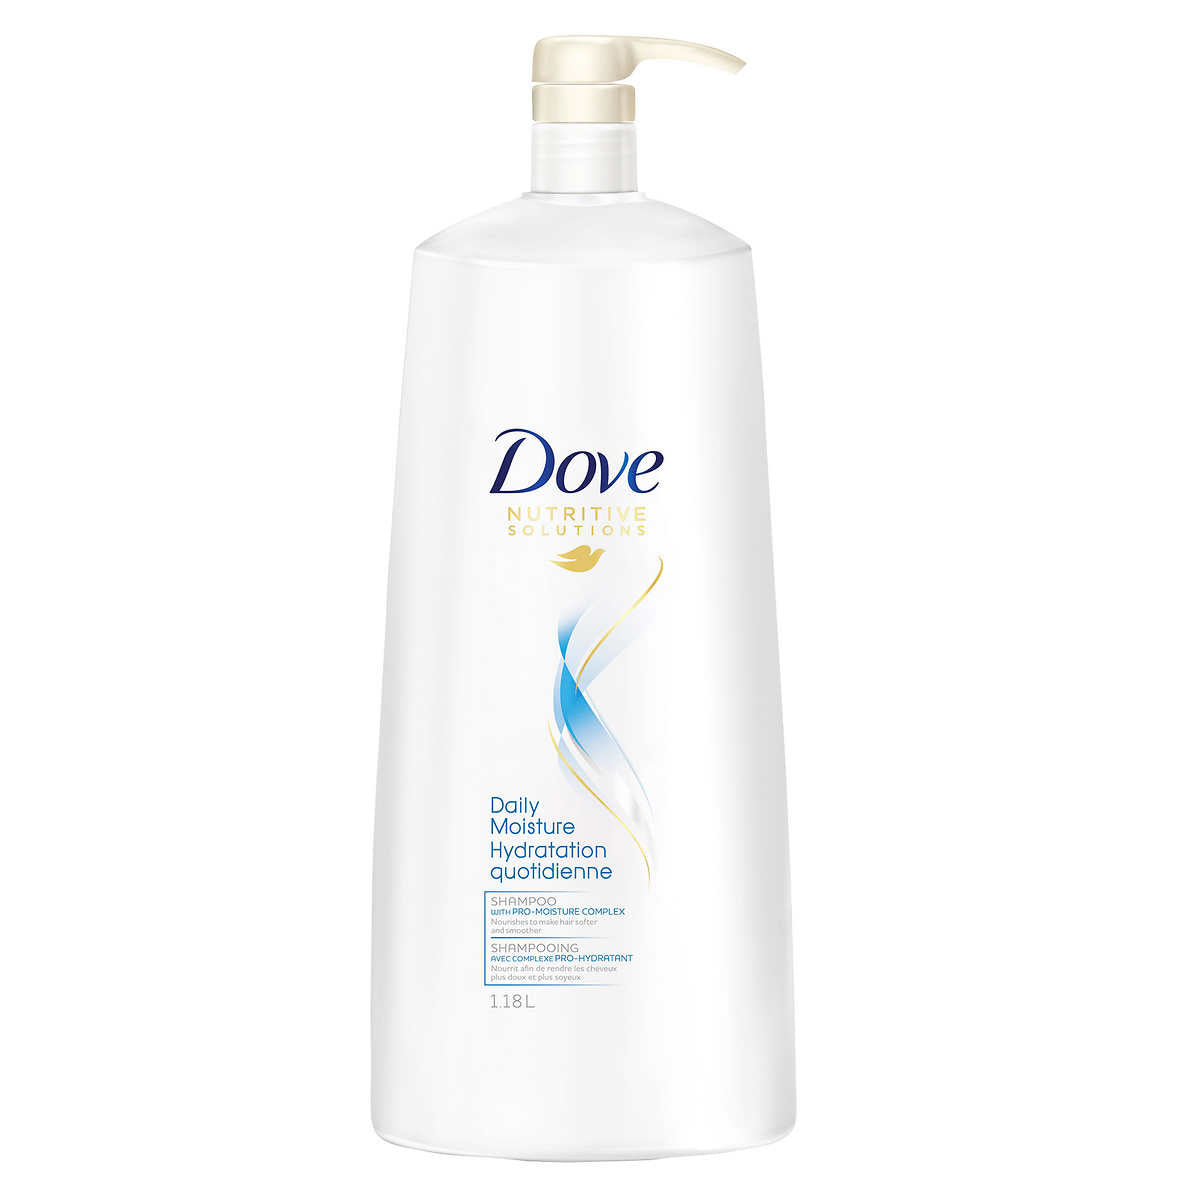 Dove Daily Moisture Shampoo 1.18l